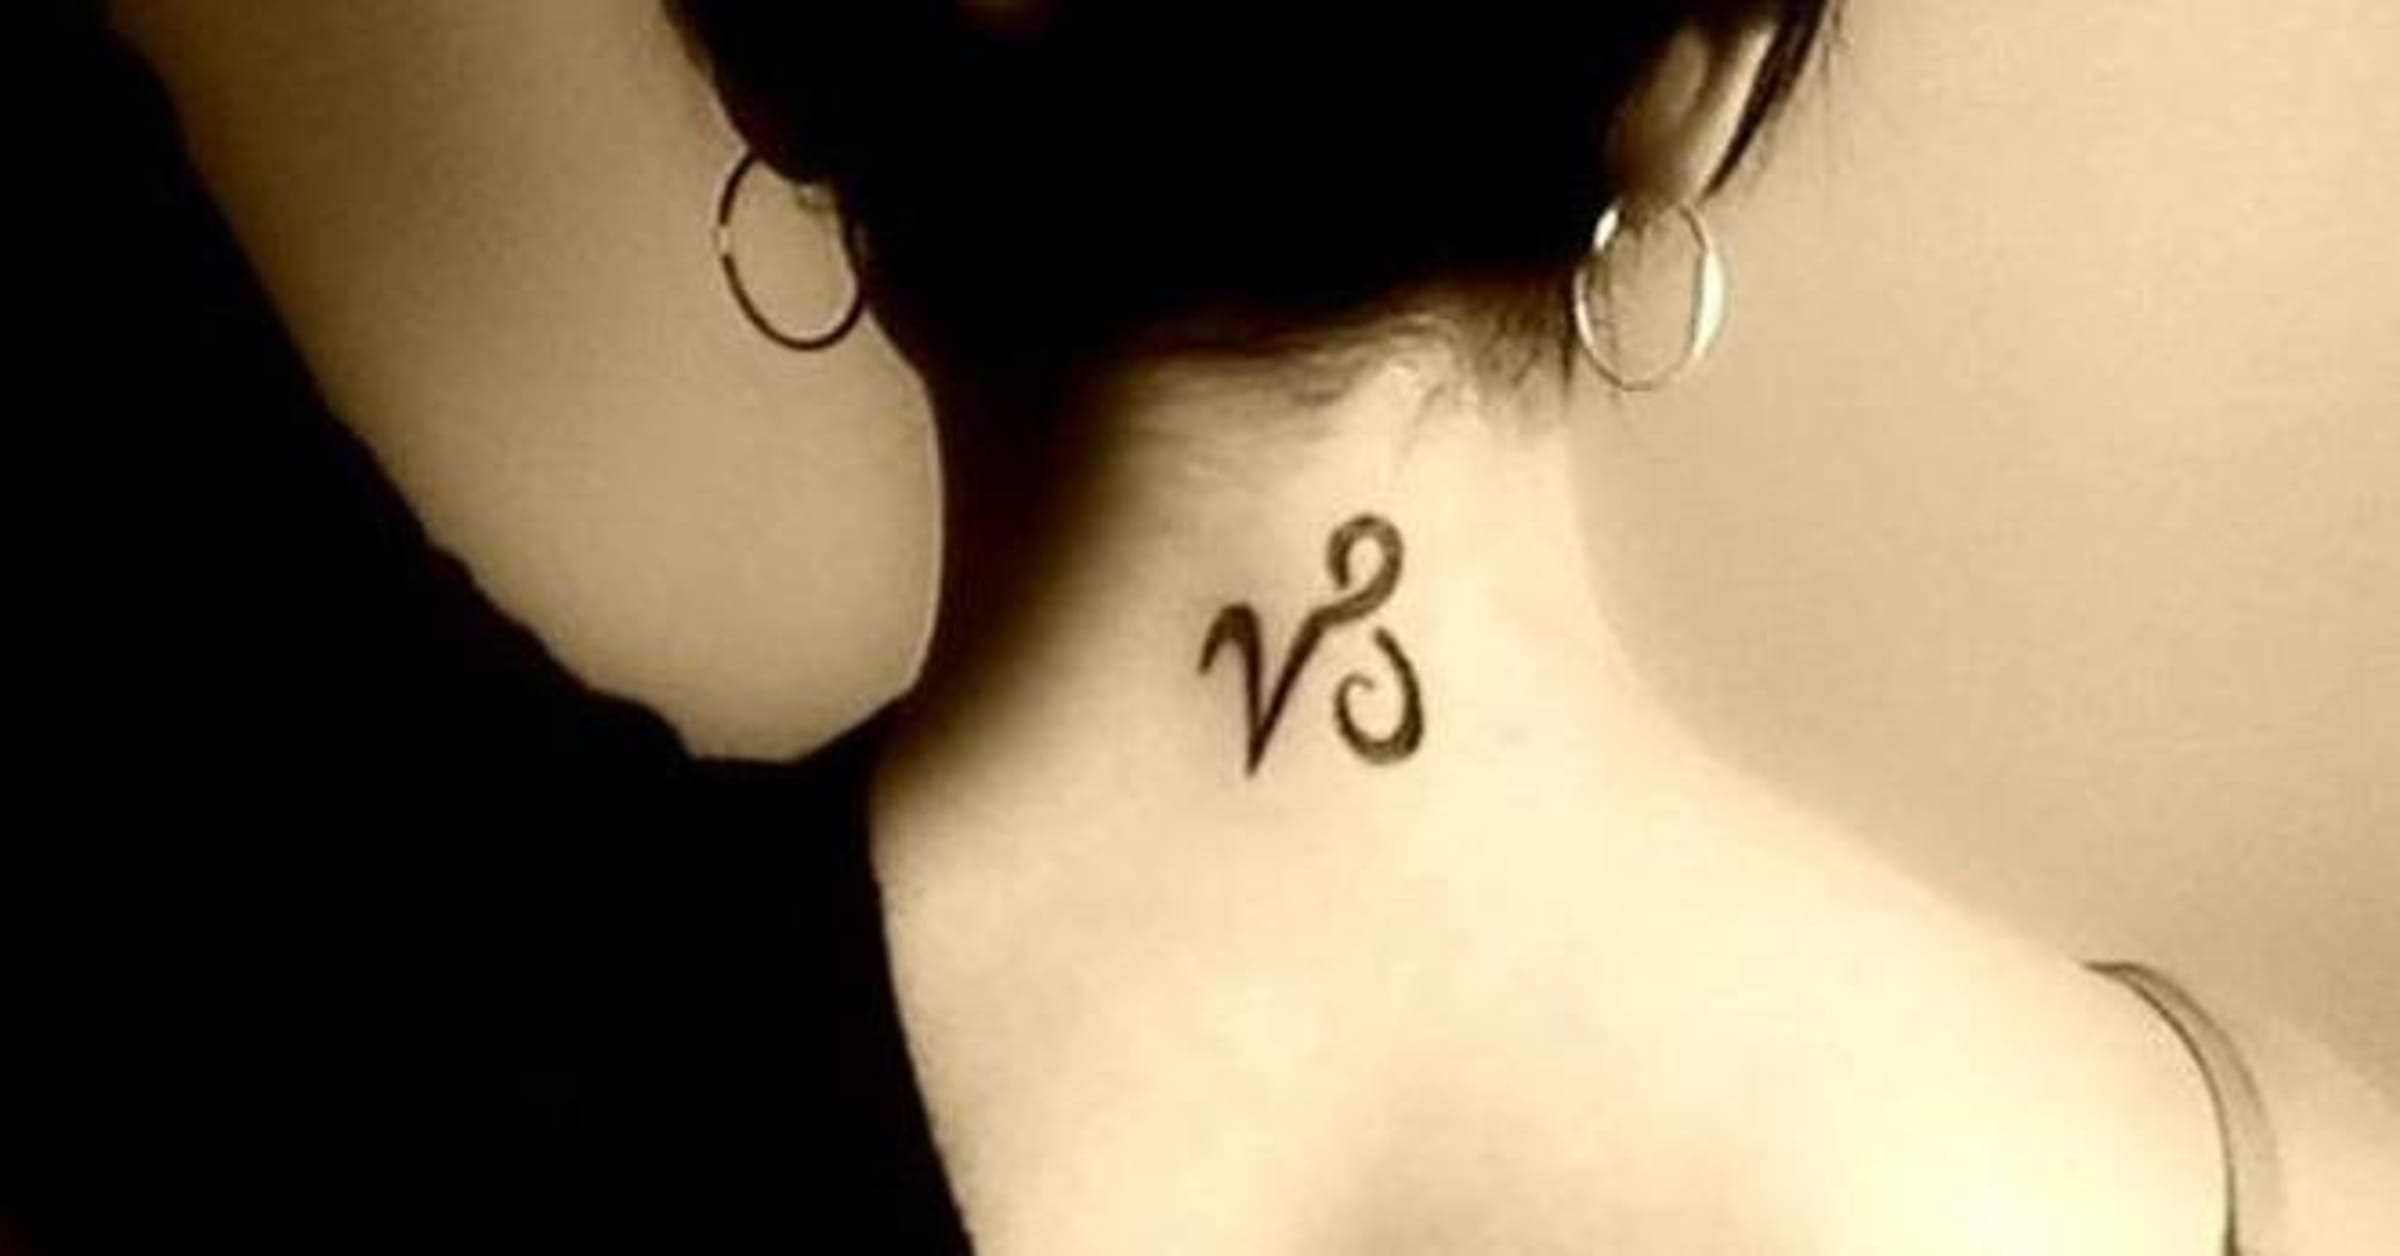 capricorn star sign tattoo designs